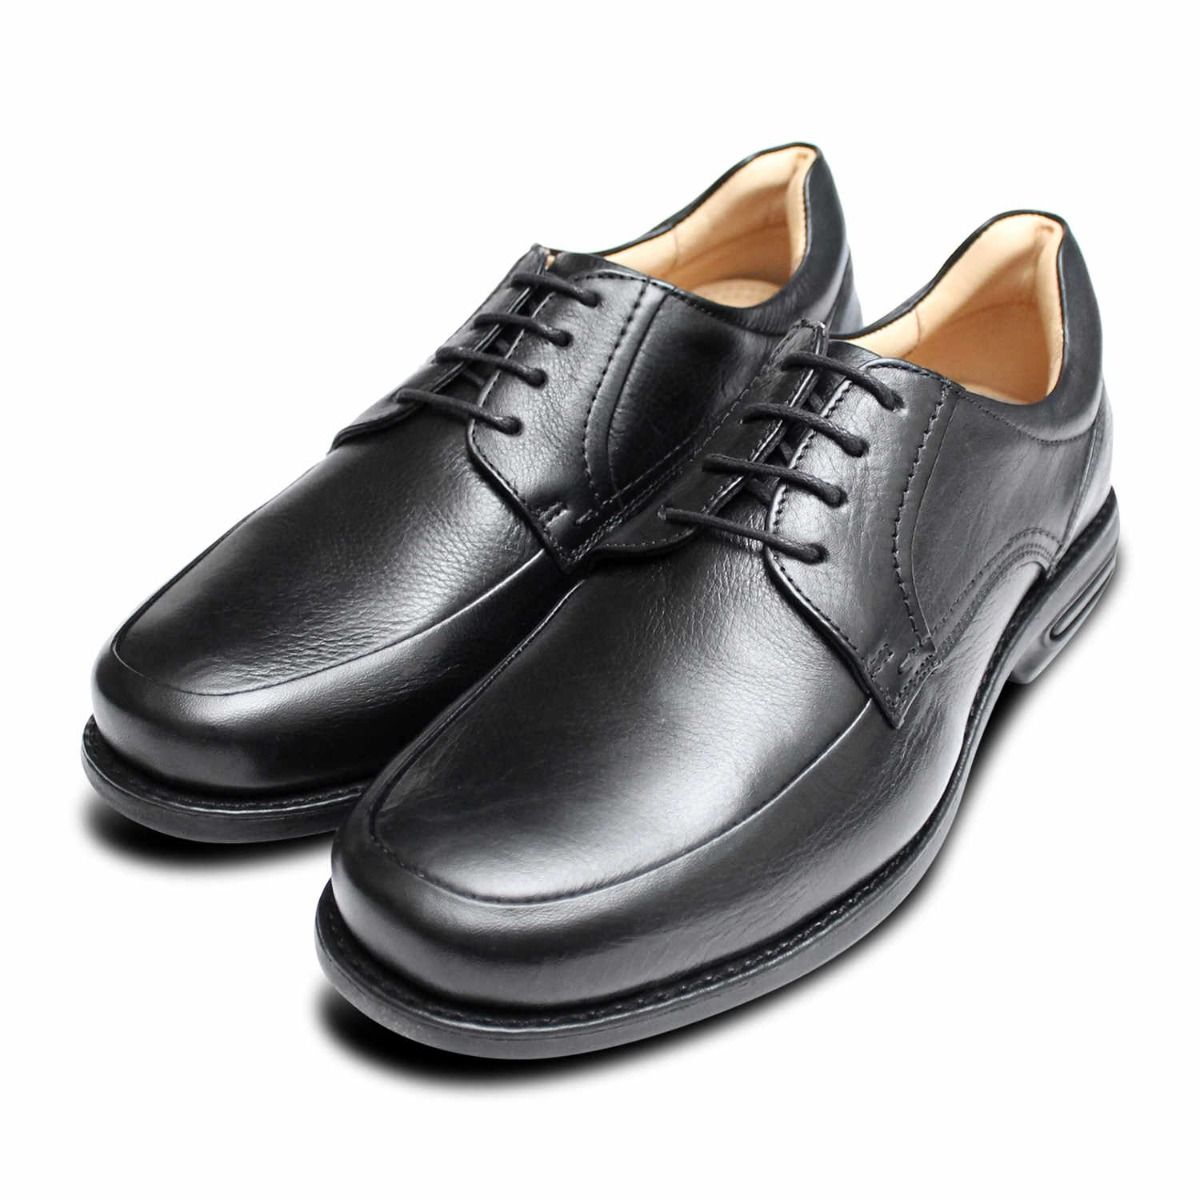 Black Color H921 Roamers Lace Up Shoe